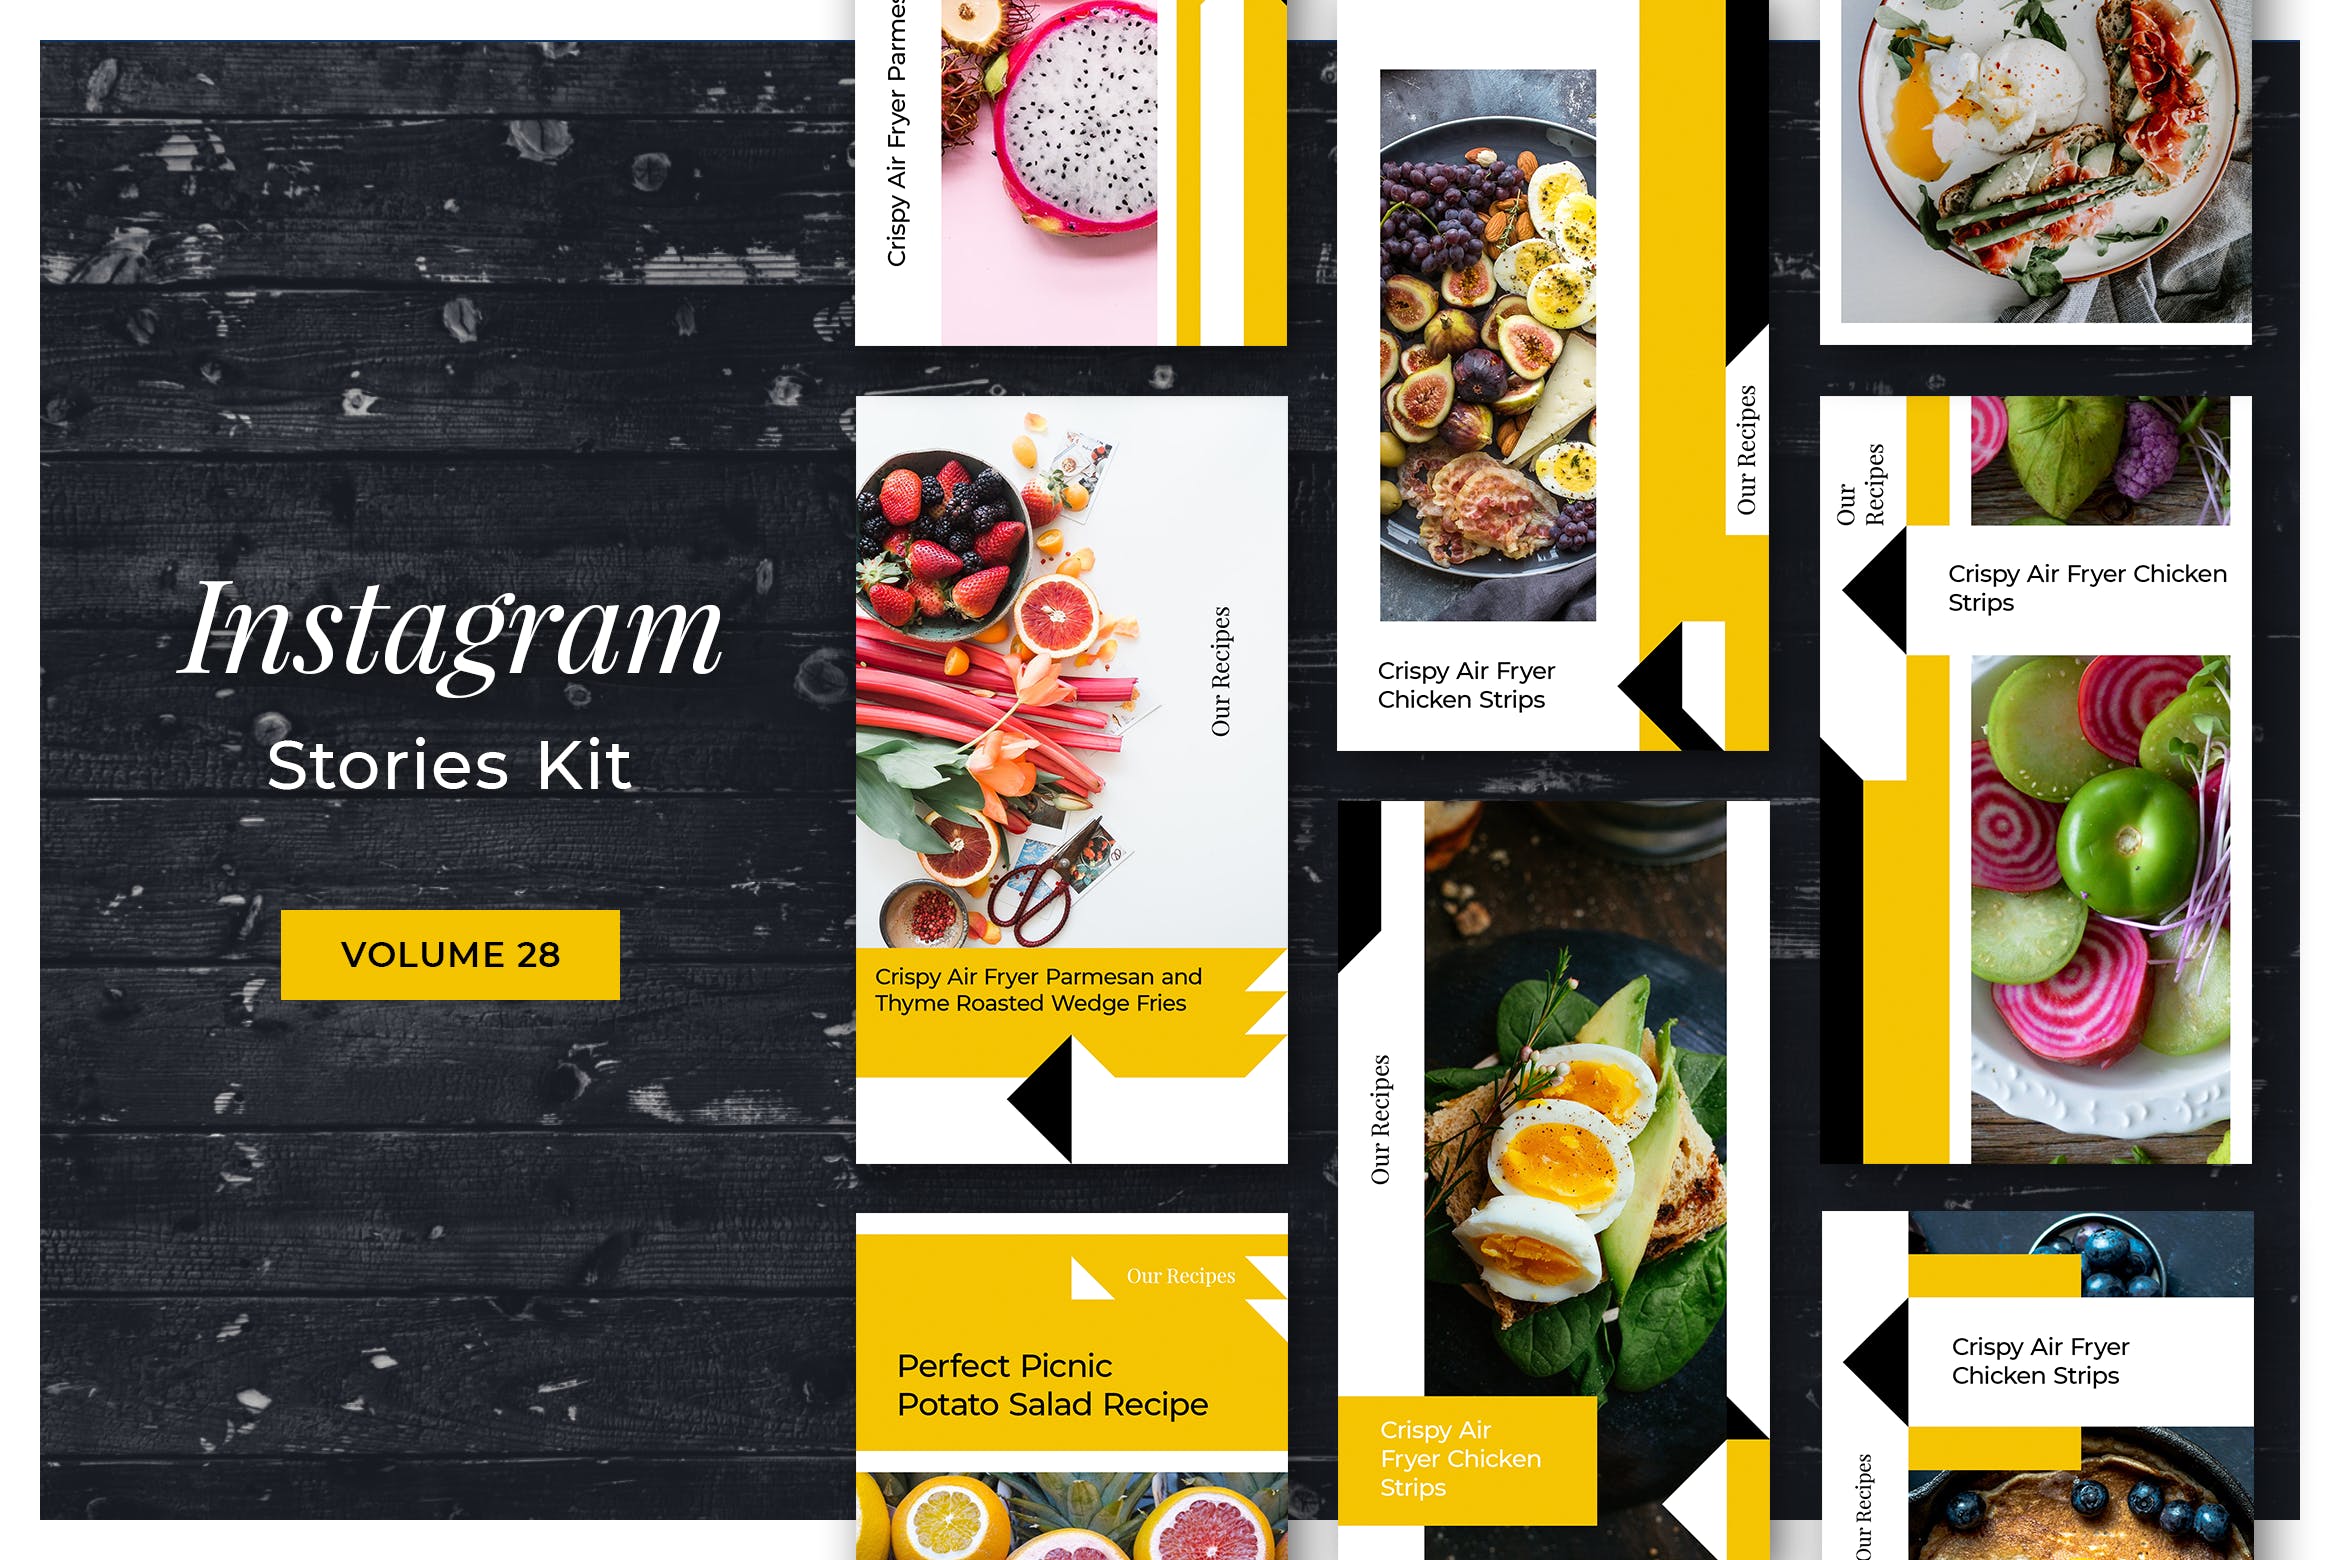 美食博客Instagram社交媒体设计素材 Instagram Stories Kit (Vol.28)插图